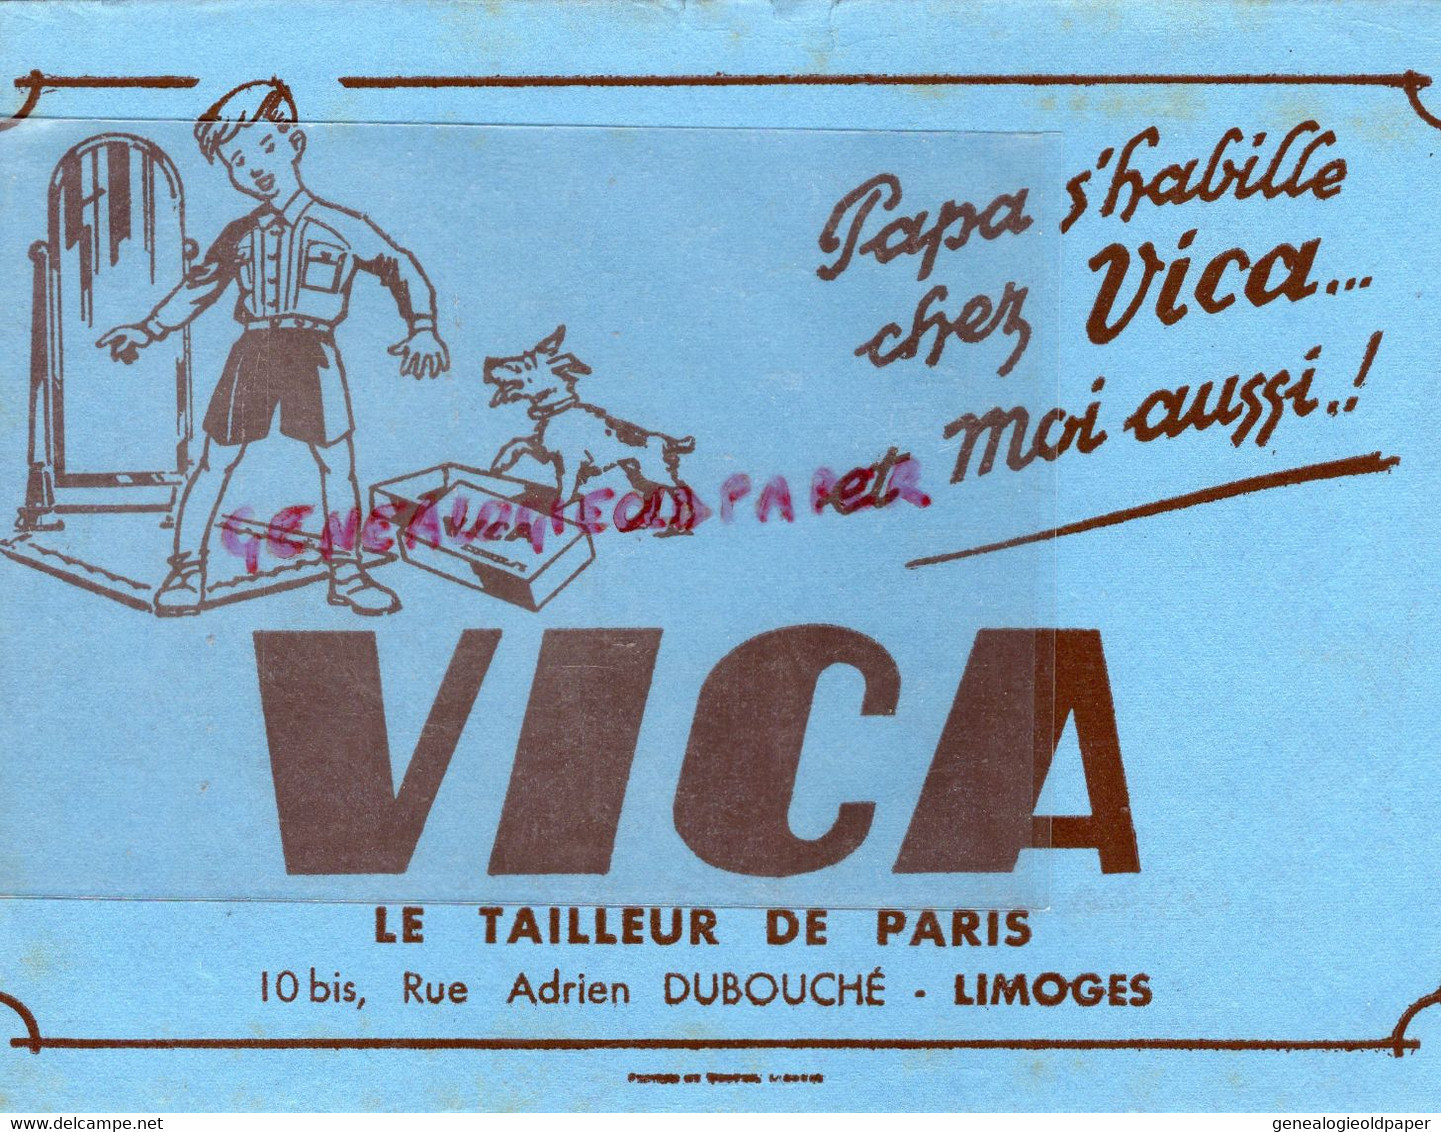 87- LIMOGES- RARE BUVARD VICA LE TAILLEUR DE PARIS -CONFECTION VETEMENTS -10 BIS RUE ADRIEN DUBOUCHE- - Textilos & Vestidos